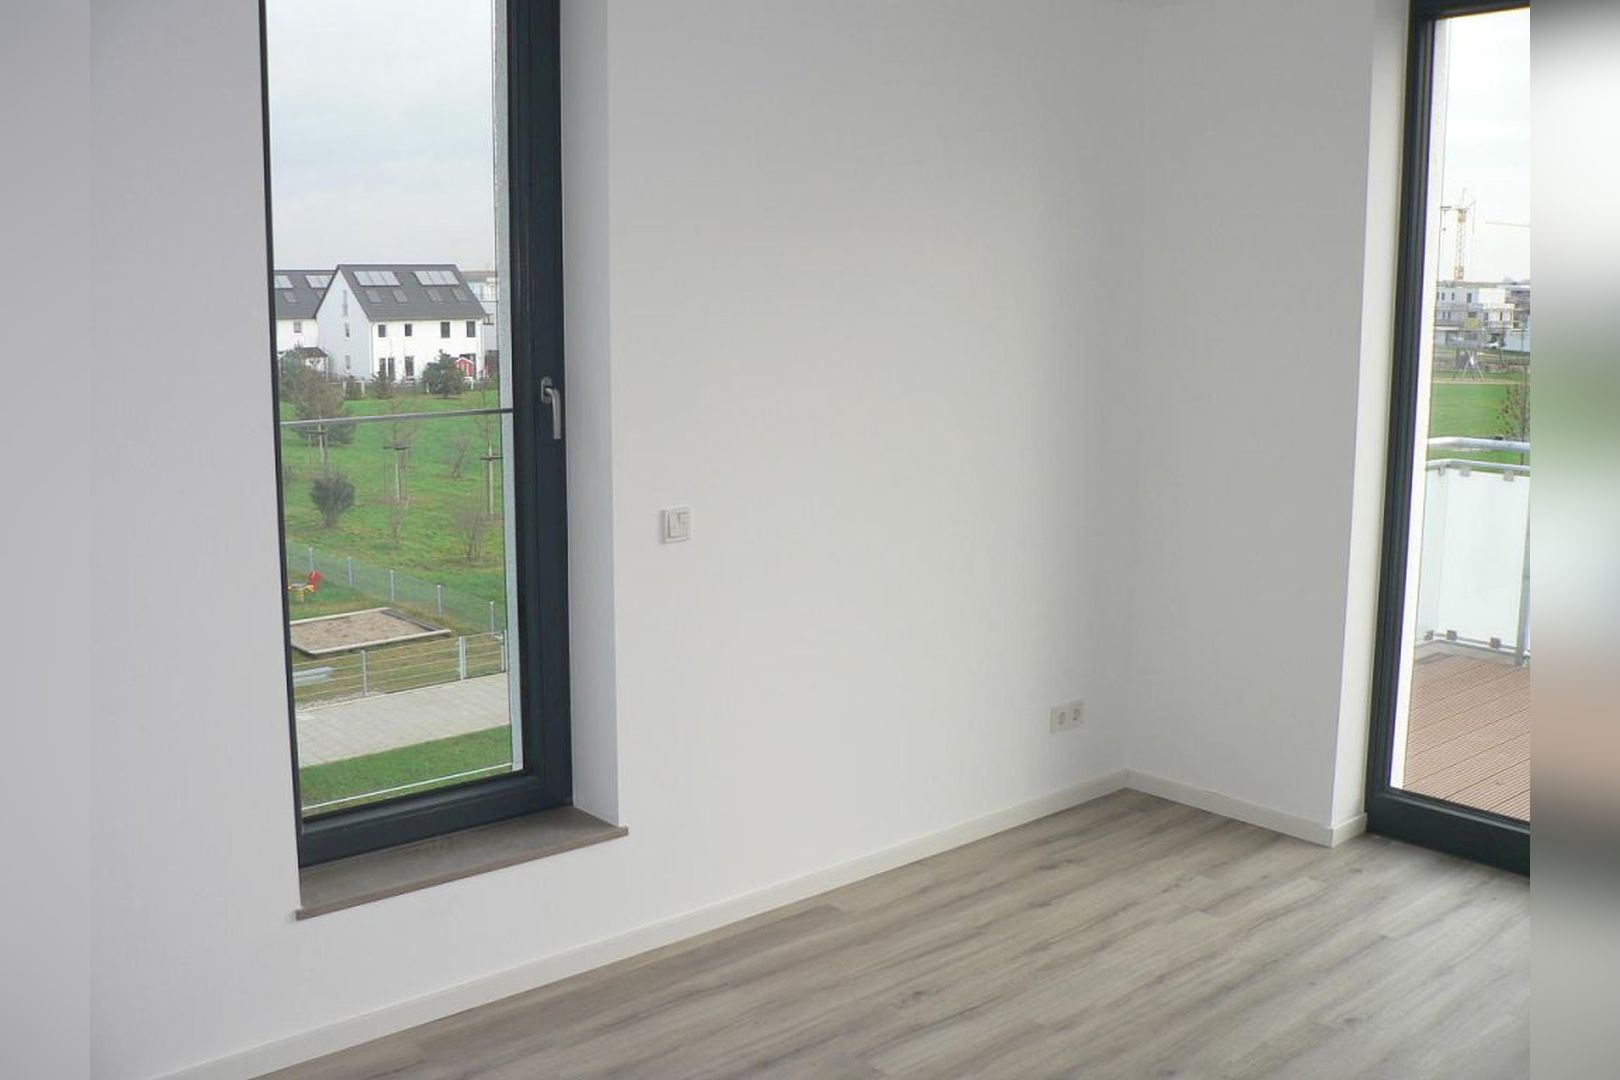 Immobilie Nr.Köln 003.5 - 5-Raum-Wohnung mit Wintergartenküche, 2 Bädern u. großem Balkon  - Bild 8.jpg